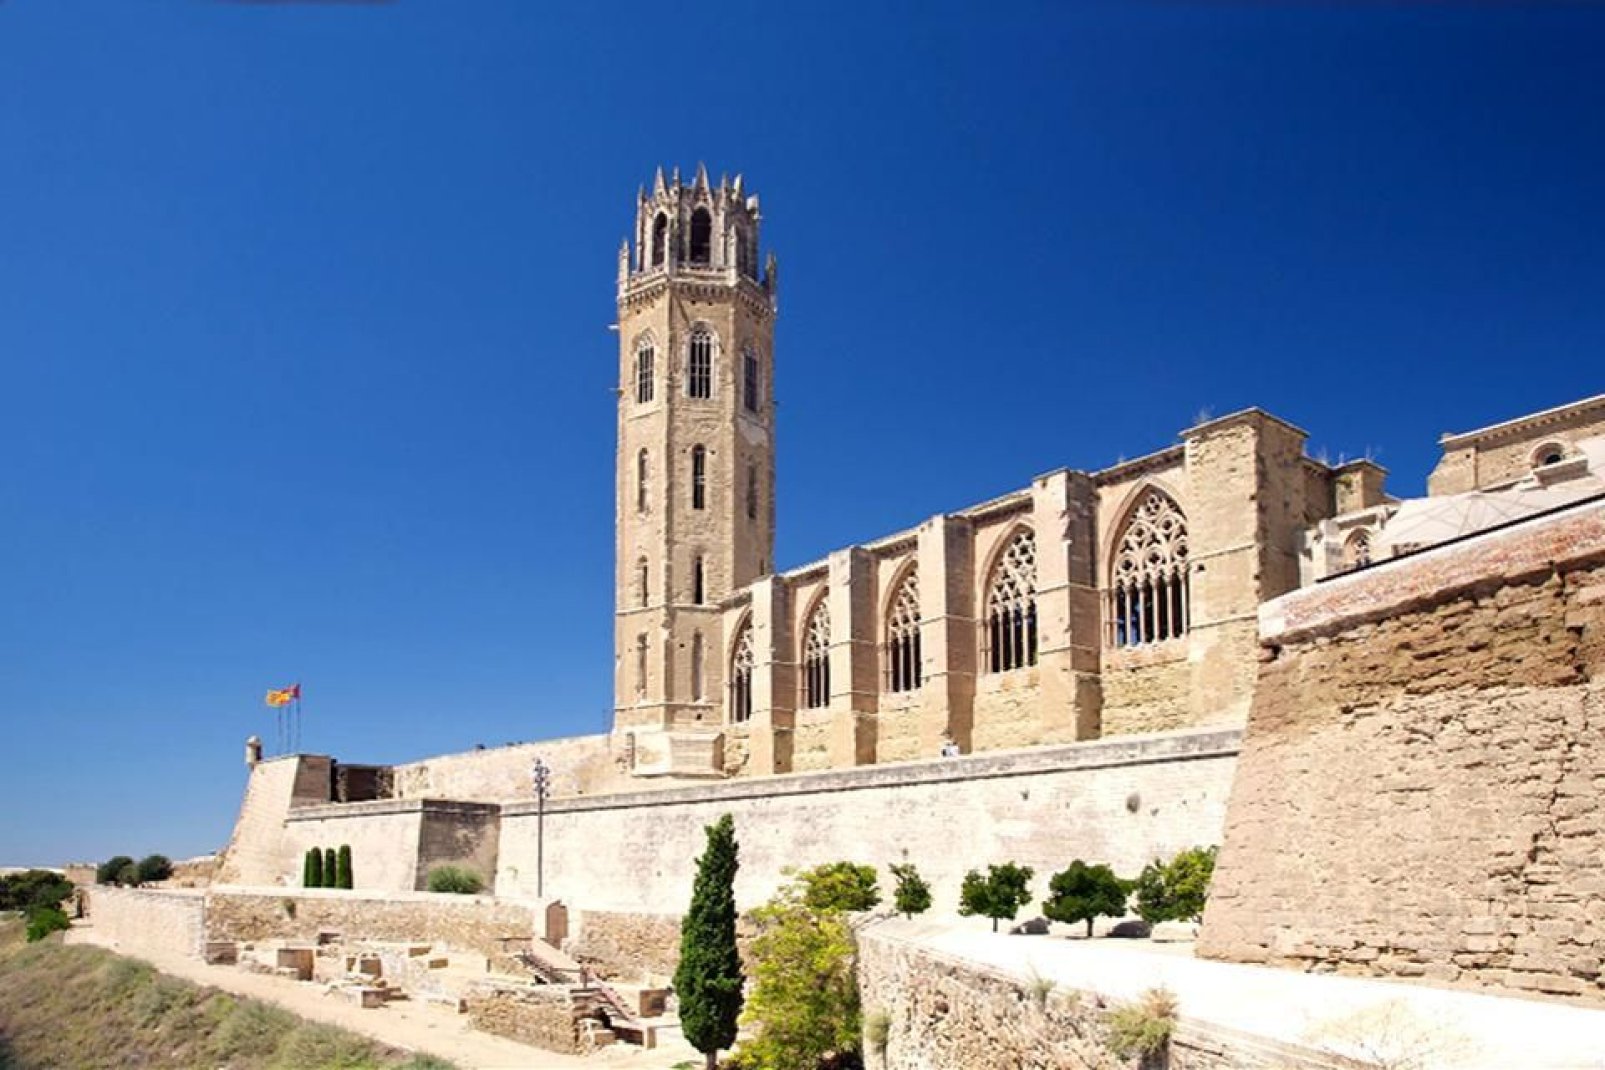 Sie wurde auf der Spitze des Puig del Castell errichtet. Sie stammt aus dem 13. Jahrhundert und wurde im gotischen Stil gebaut.